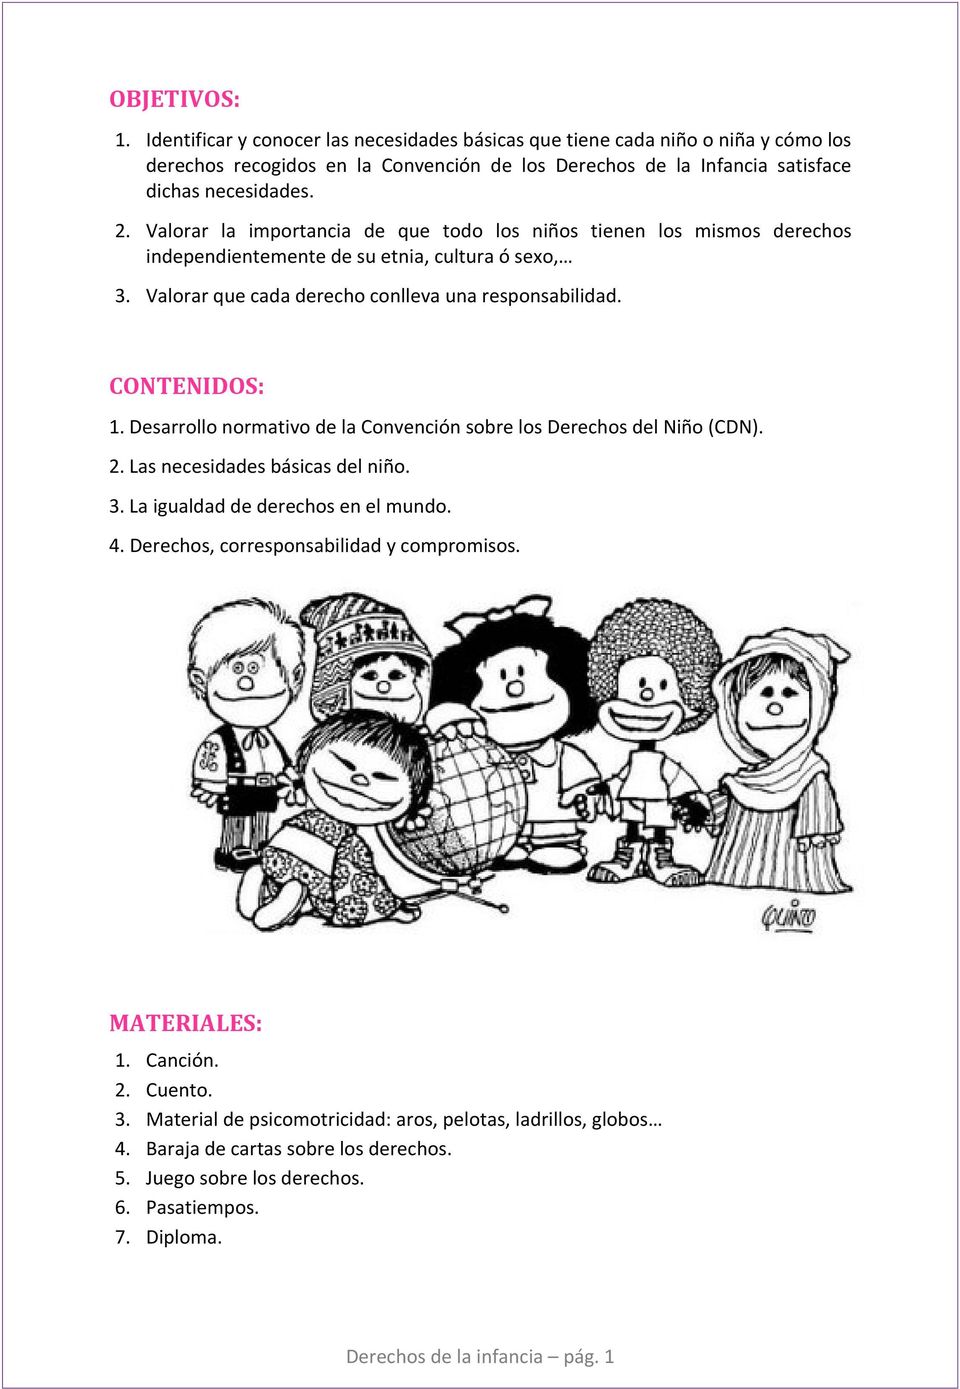 Desarrollo normativo de la Convención sobre los Derechos del Niño (CDN). 2. Las necesidades básicas del niño. 3. La igualdad de derechos en el mundo. 4. Derechos, corresponsabilidad y compromisos.